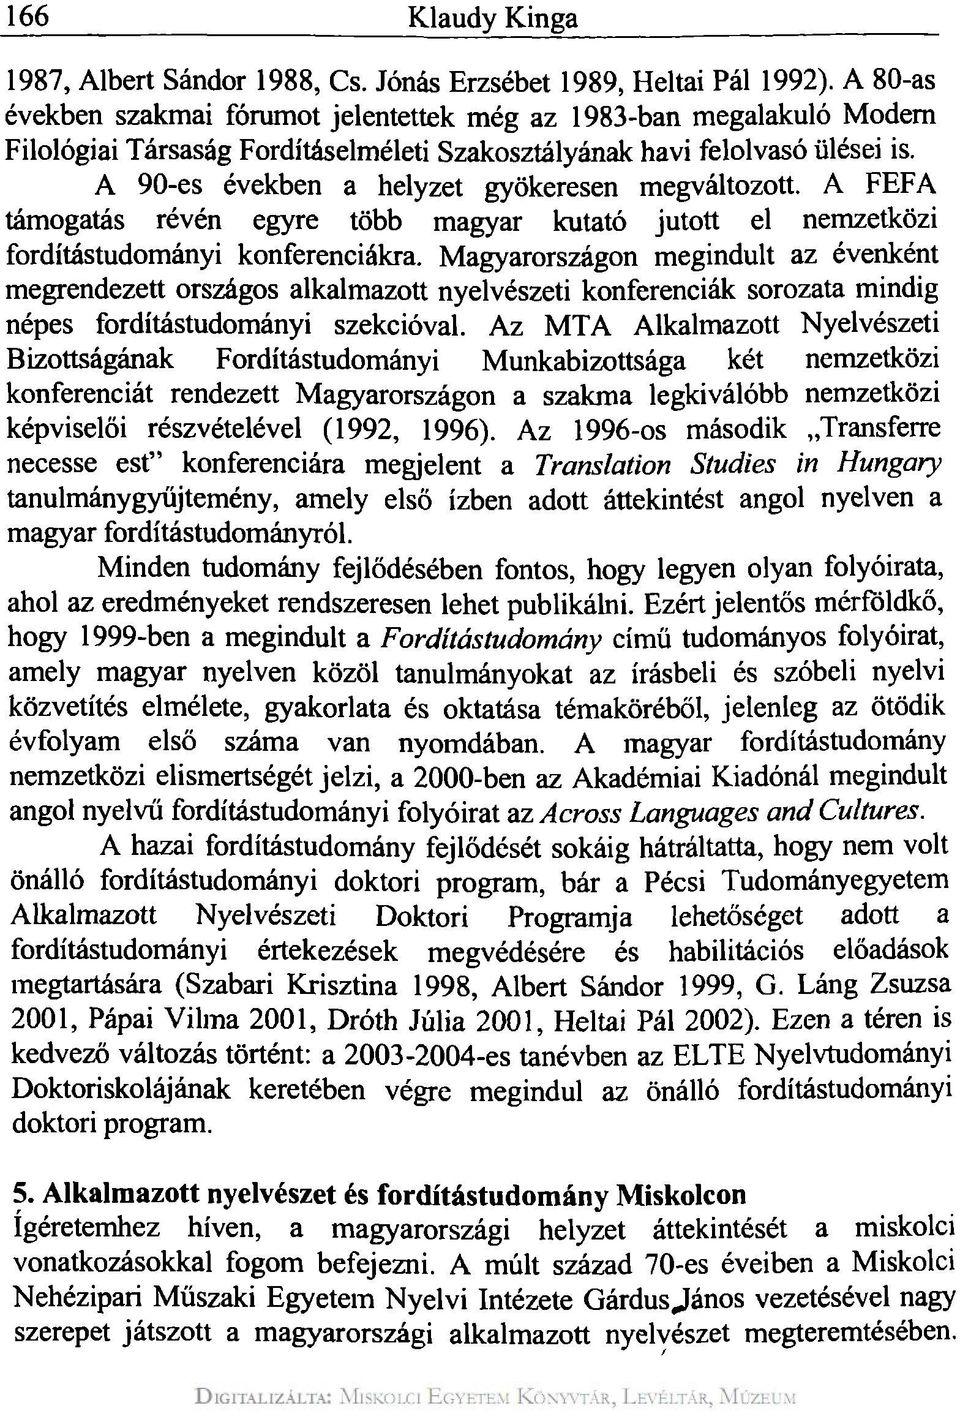 A 90-es években a helyzet gyökeresen megváltozott. A FEFA támogatás révén egyre több magyar kutató jutott el nemzetközi fordítástudományi konferenciákra.